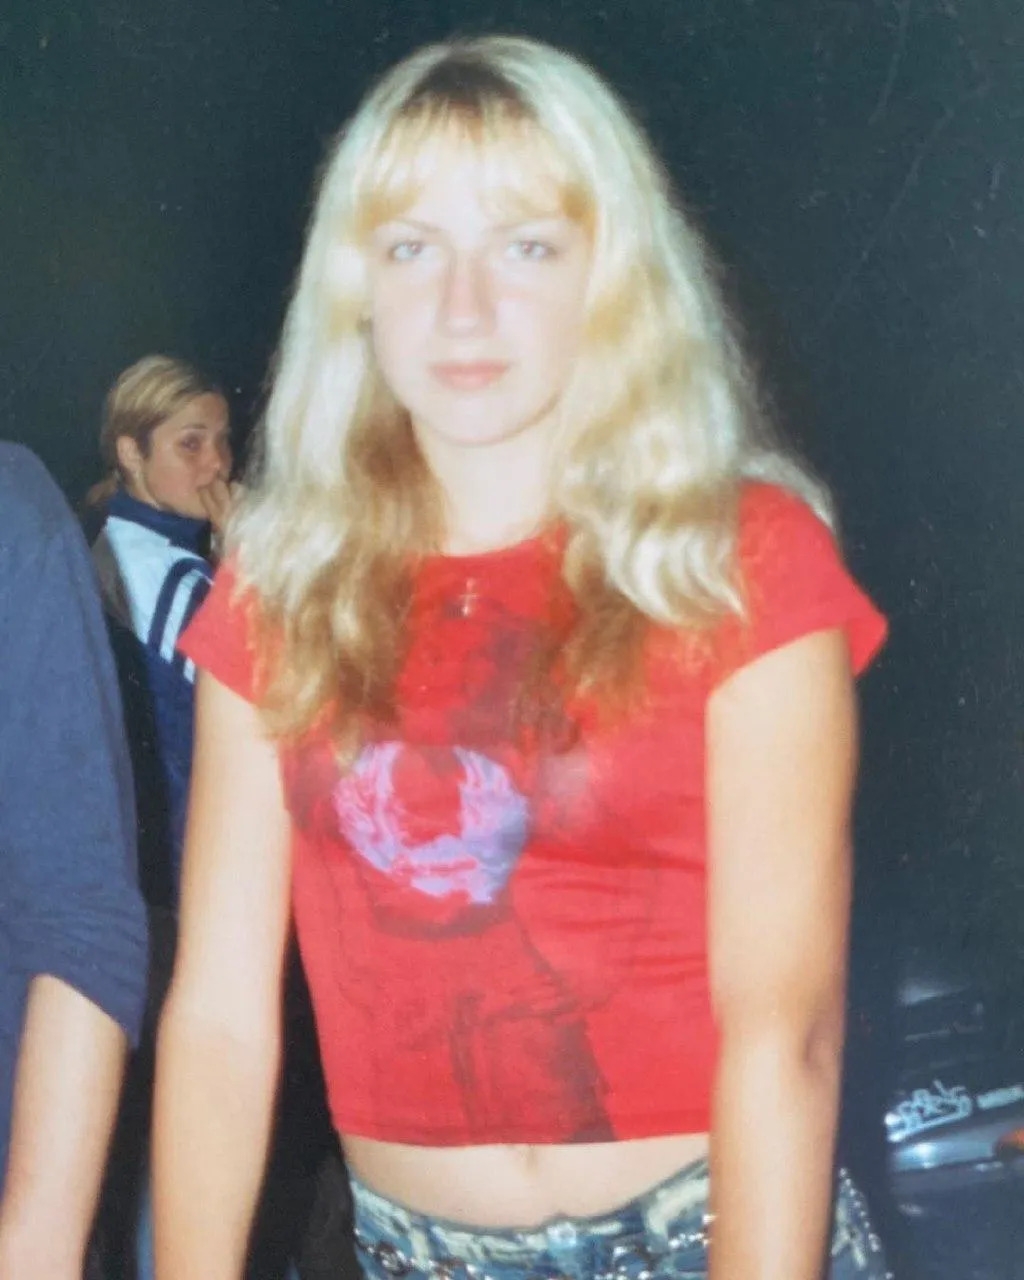 Лесі Нікітюк 36 років: як зірка телебачення виглядала в шкільні роки та що змінилося зараз (ФОТО) - фото №2